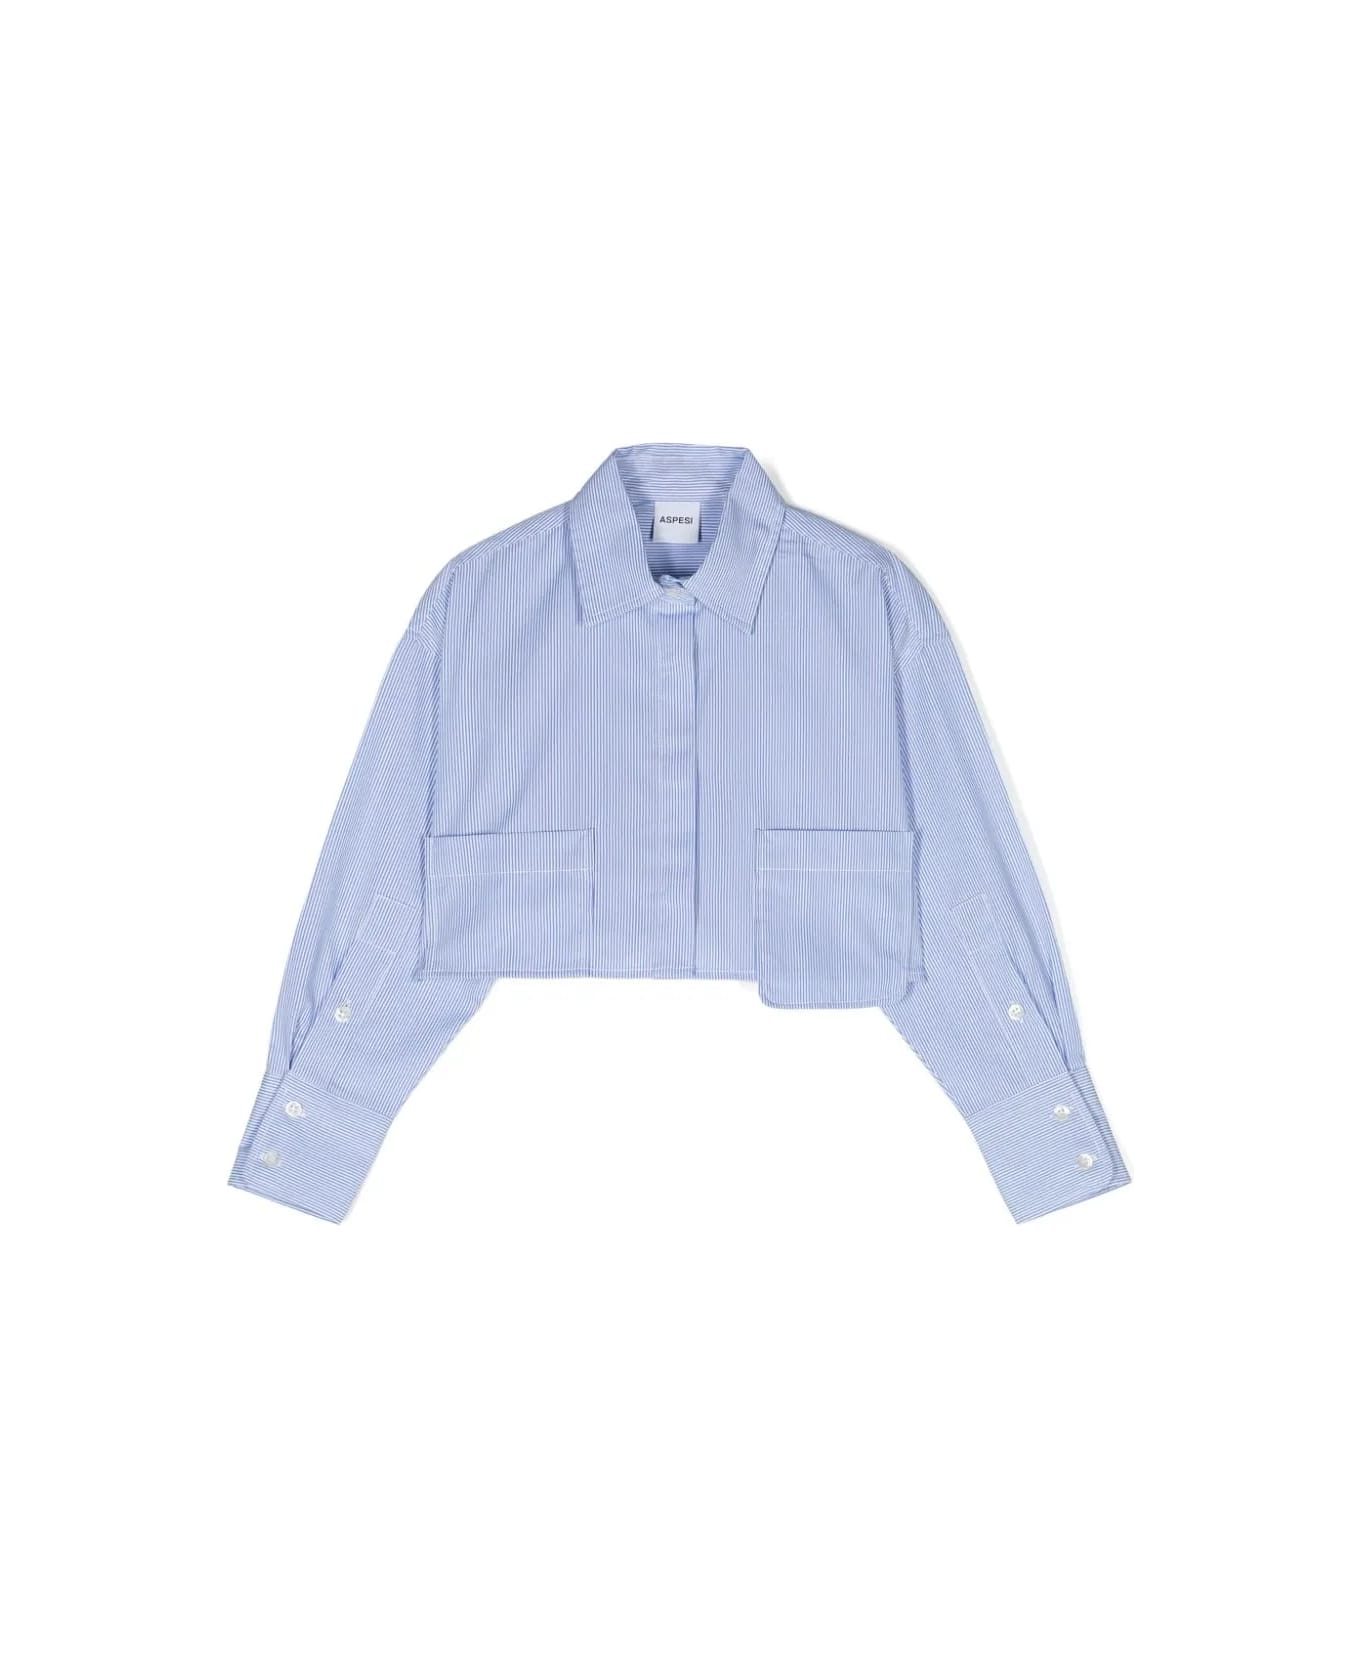 Aspesi Striped Crop Shirt - Light blue シャツ